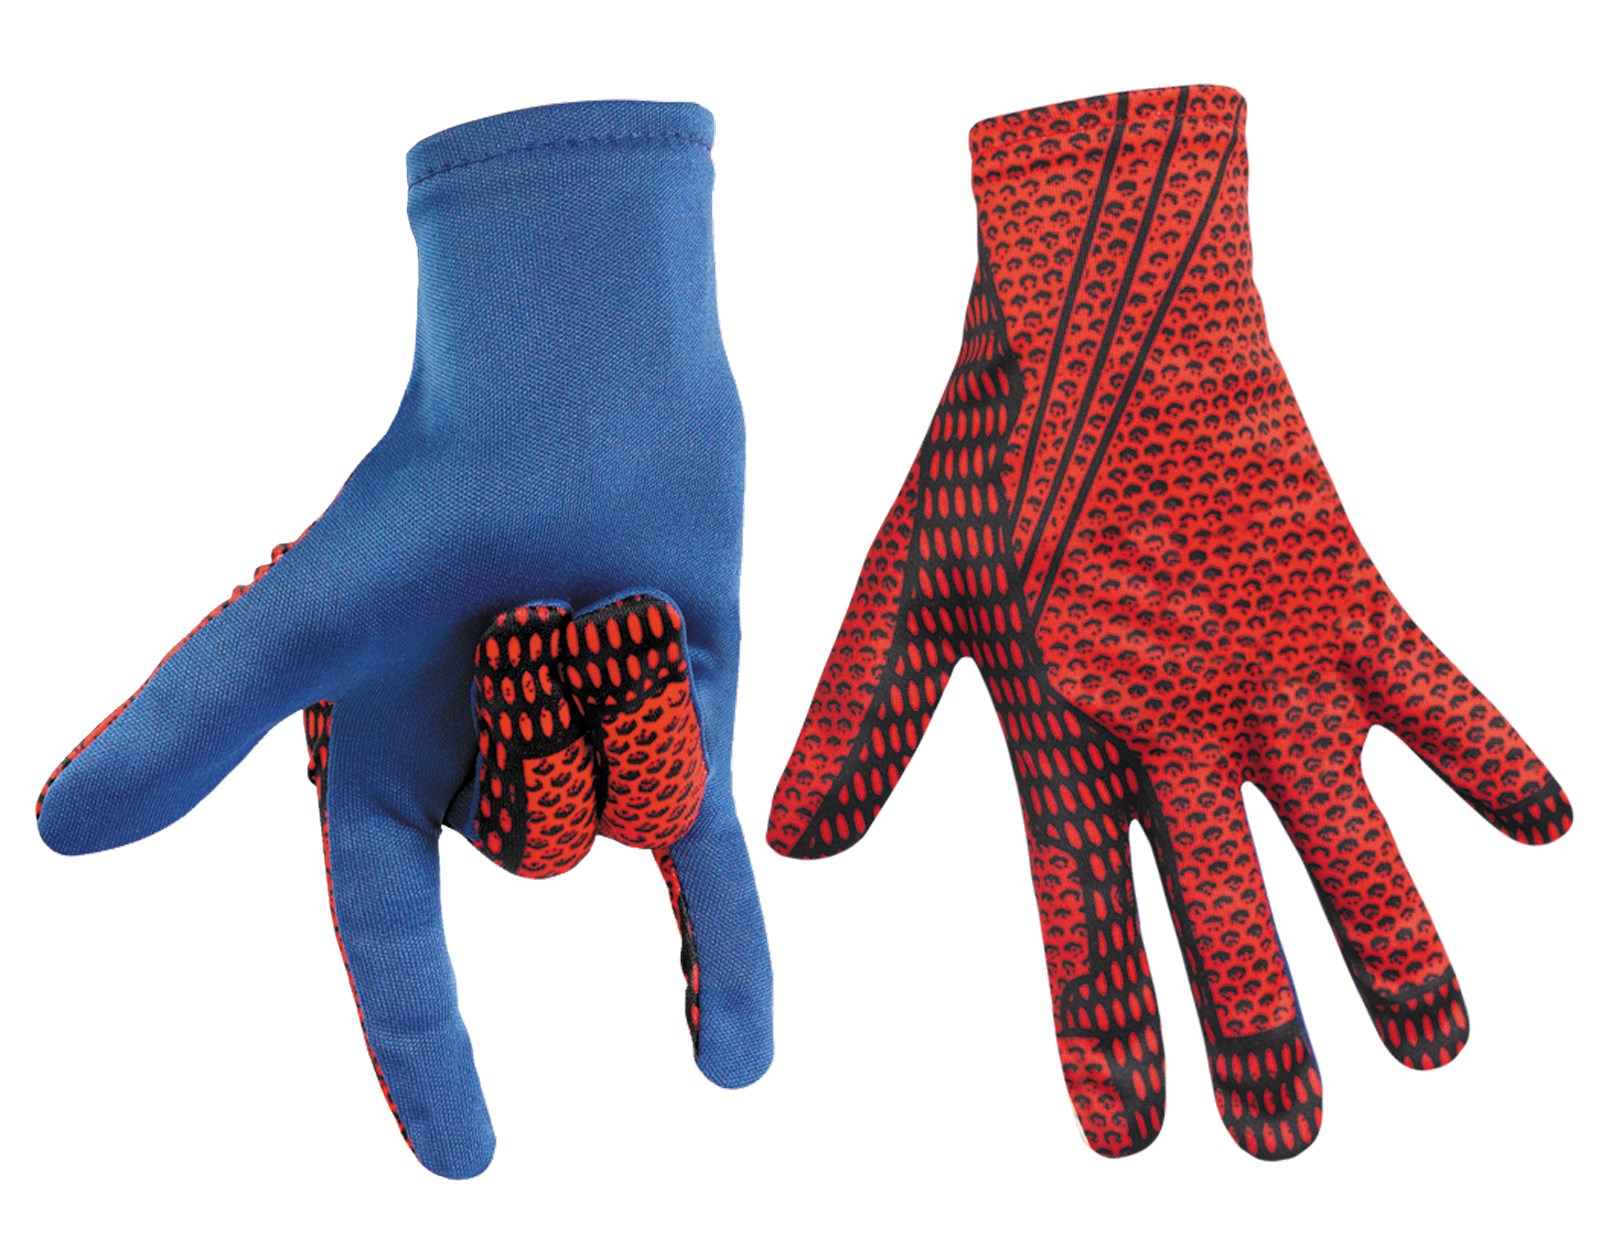 The Amazing Spider-Man Child Gloves